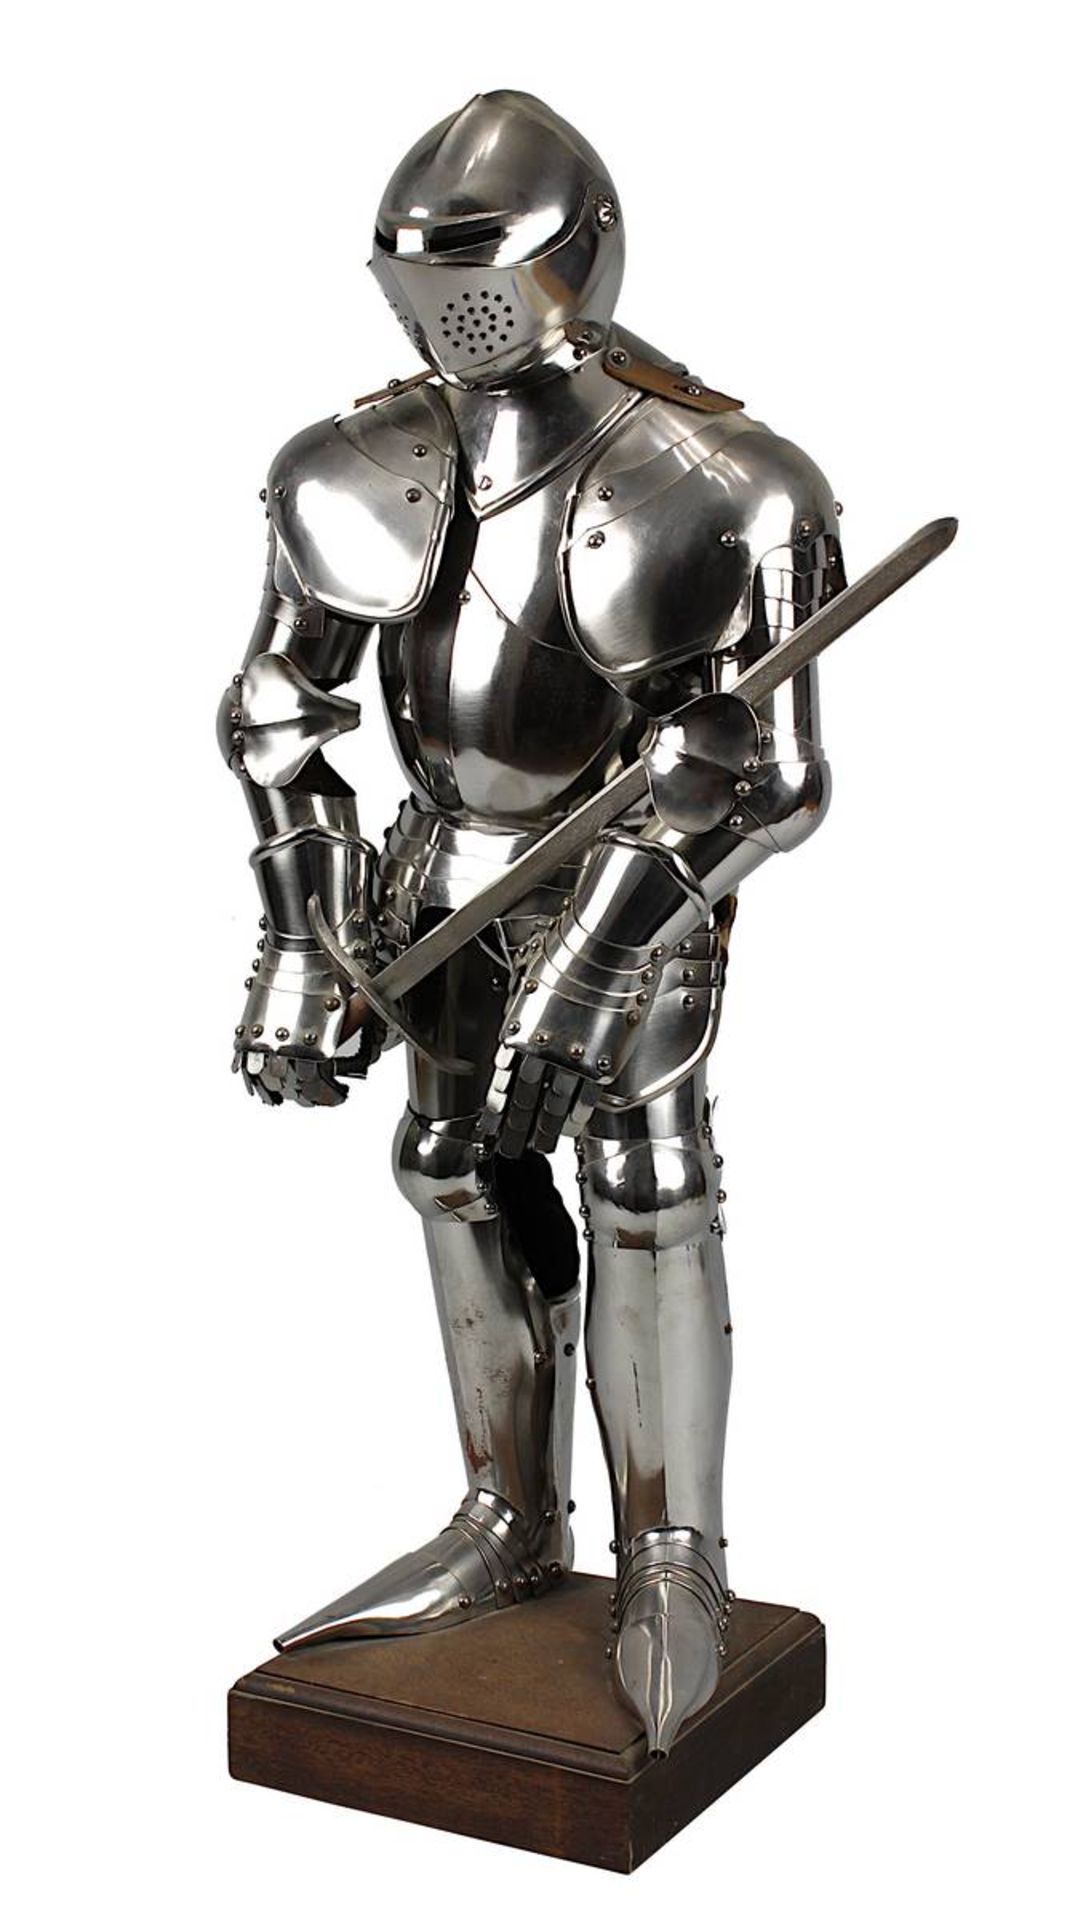 Miniaturrüstung, 20. Jh., nach spätmittelalterlichen Vorbild einer Ritterrüstung, mit Schwert, auf